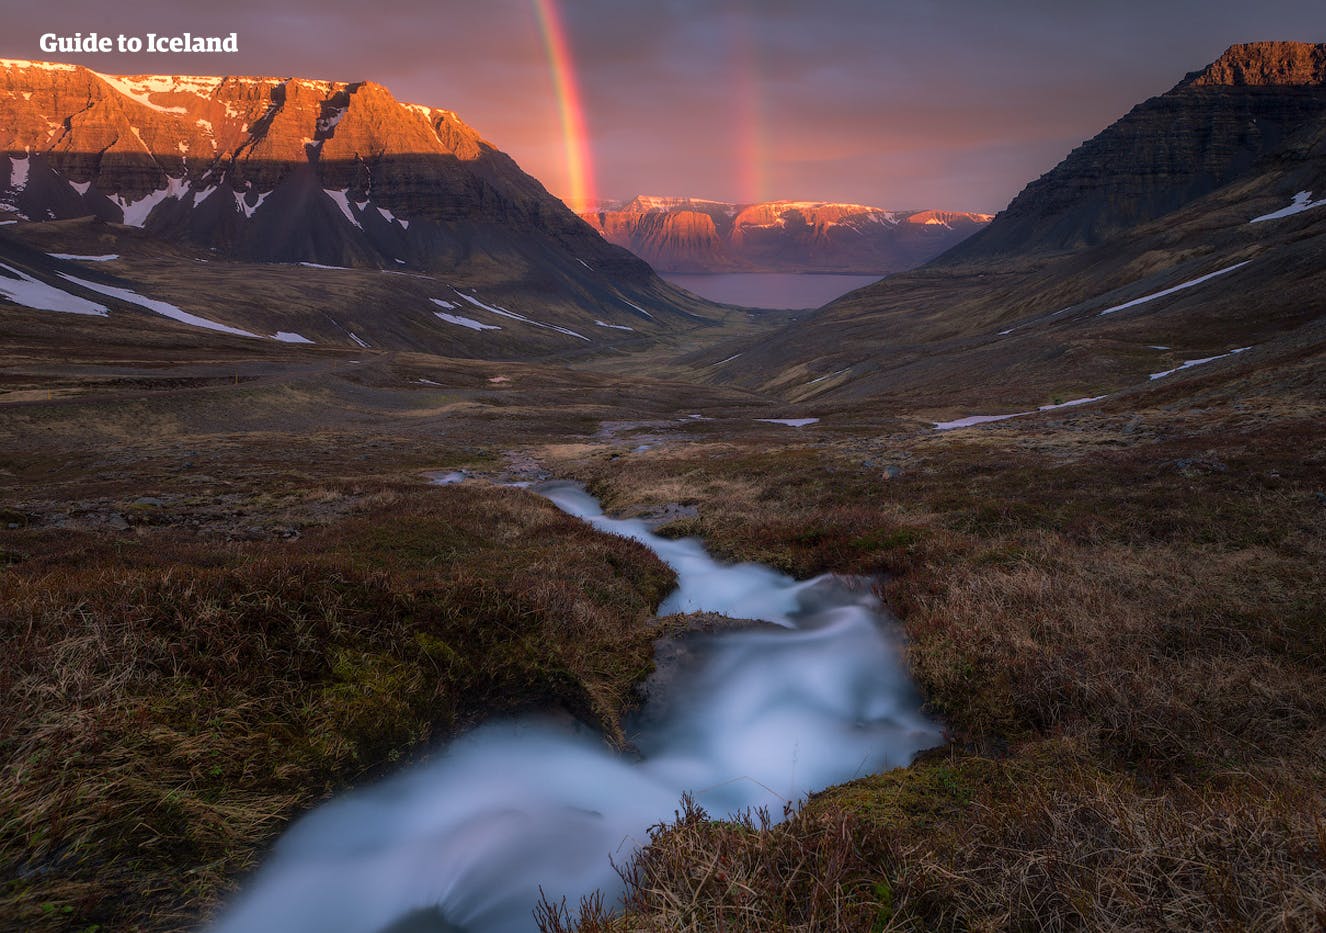 Un ruscello che scorre attraverso una valle nei fiordi occidentali dell'Islanda. Sullo sfondo si può vedere un arcobaleno.